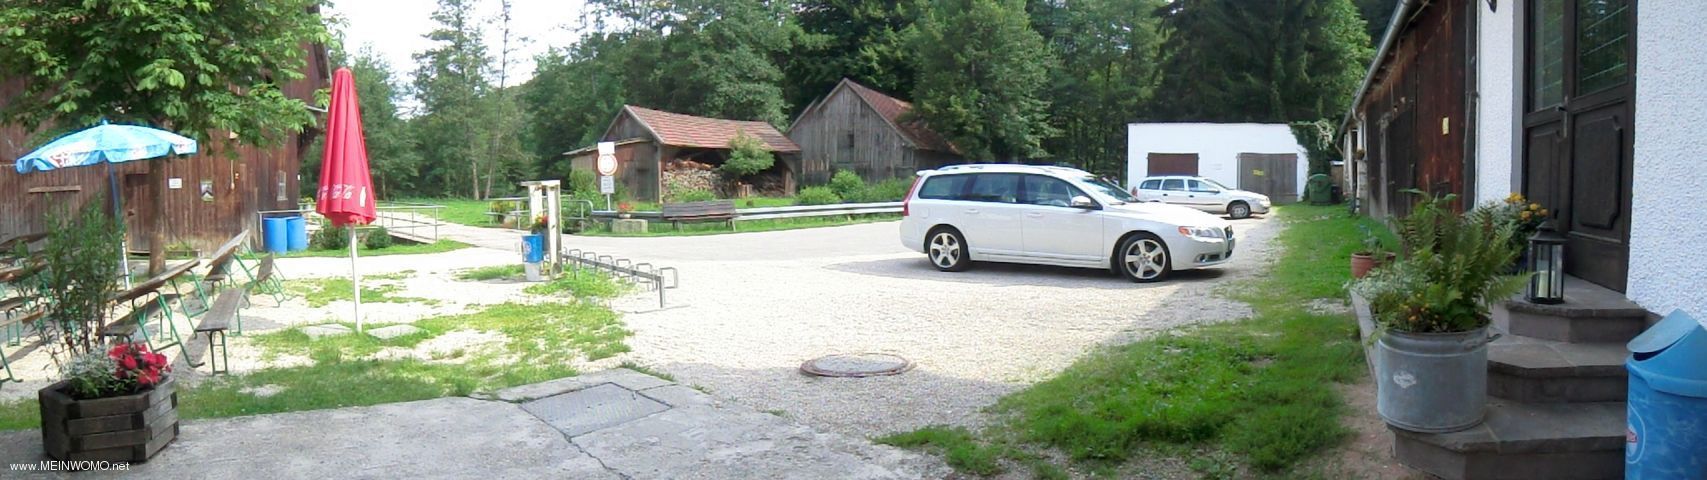  Parking at the Landgasthof Fries Mill, Beratzhausen